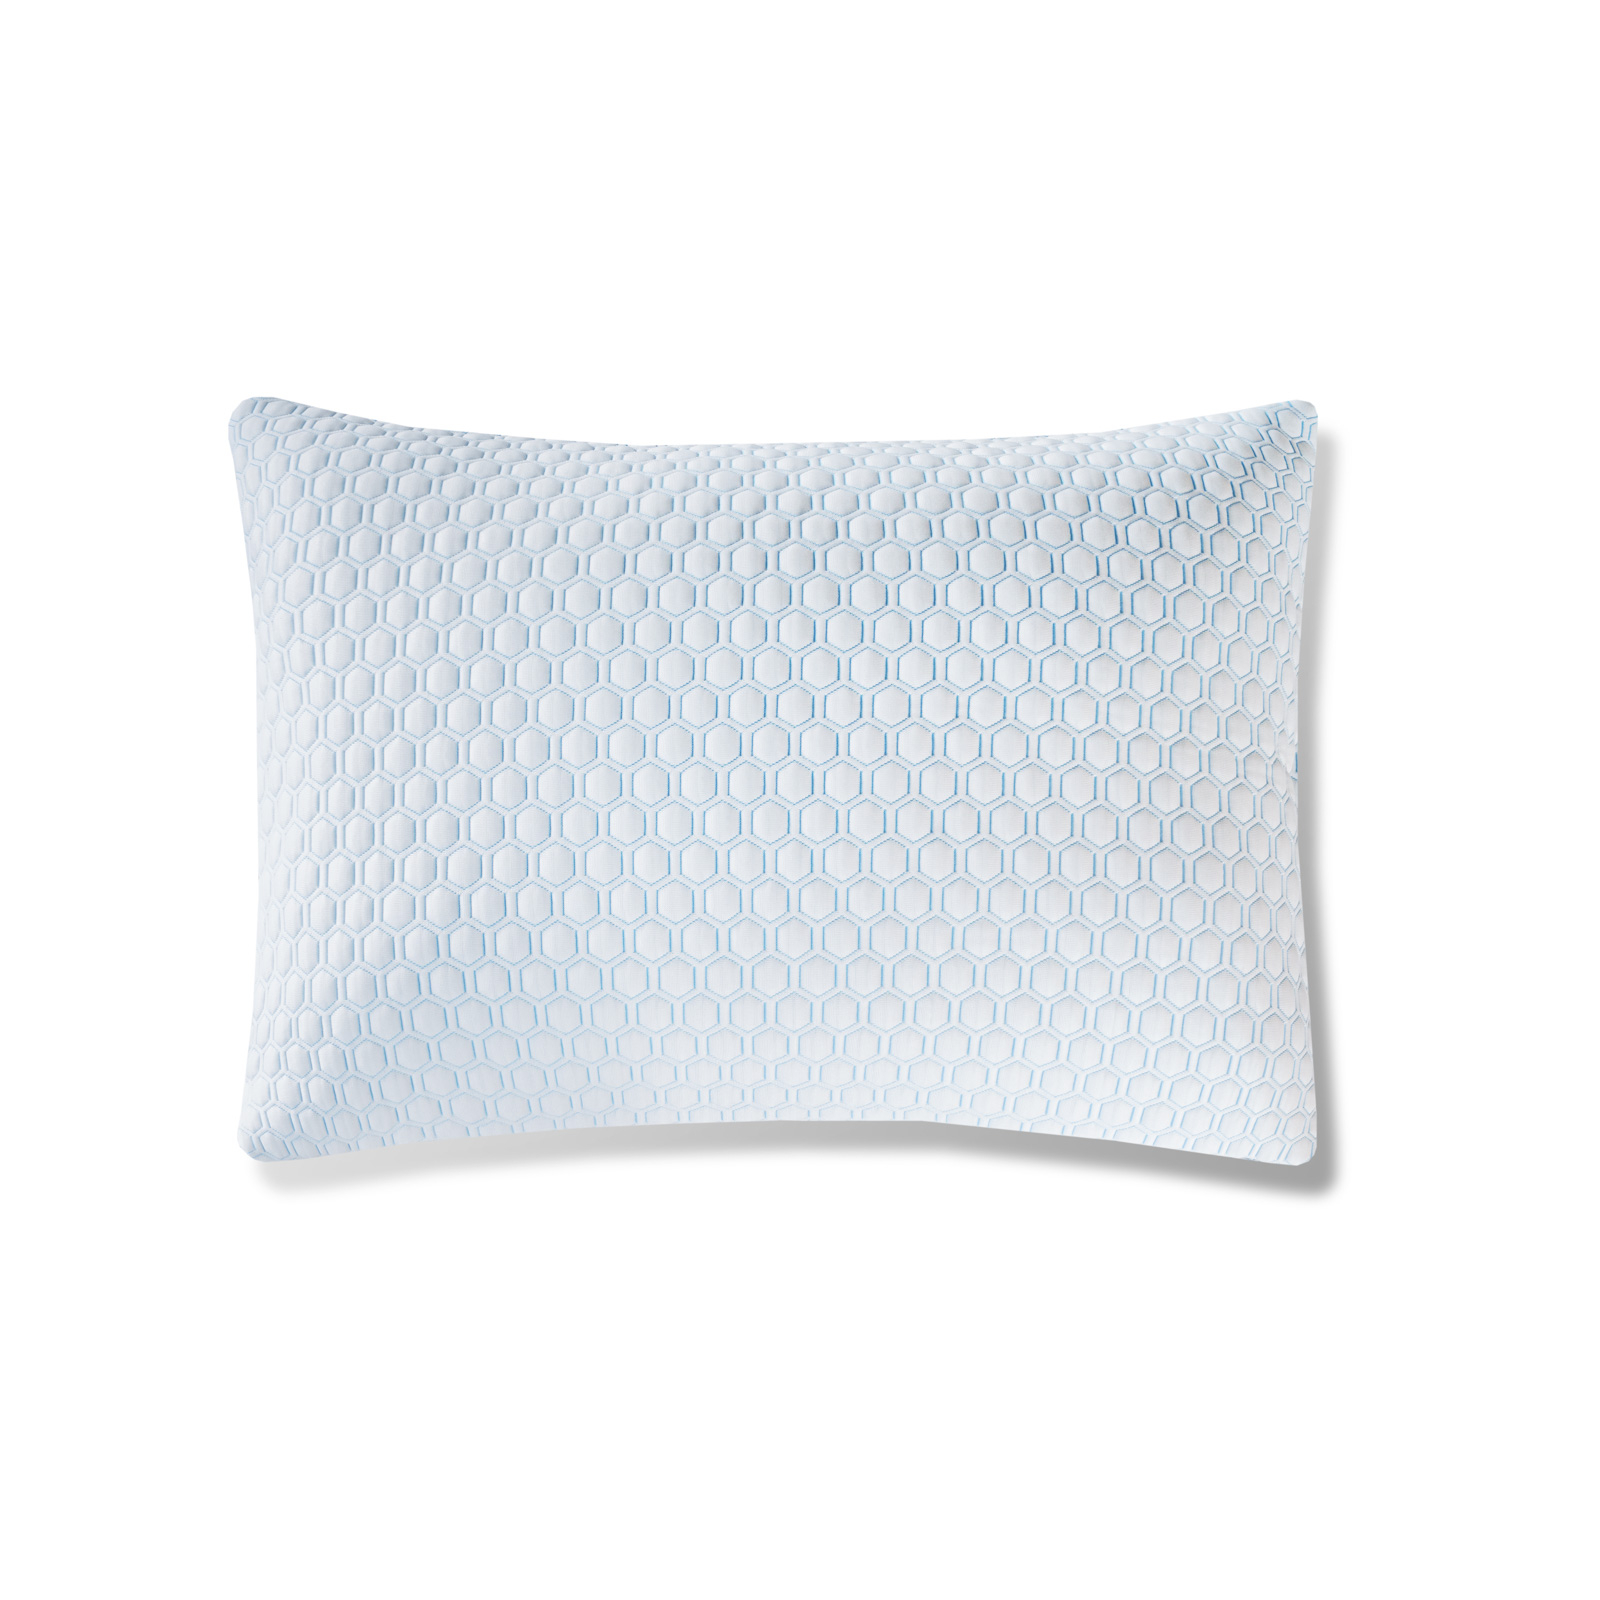 Защитный чехол для подушки Medsleep Orto Cool белый с голубым 50х70 см